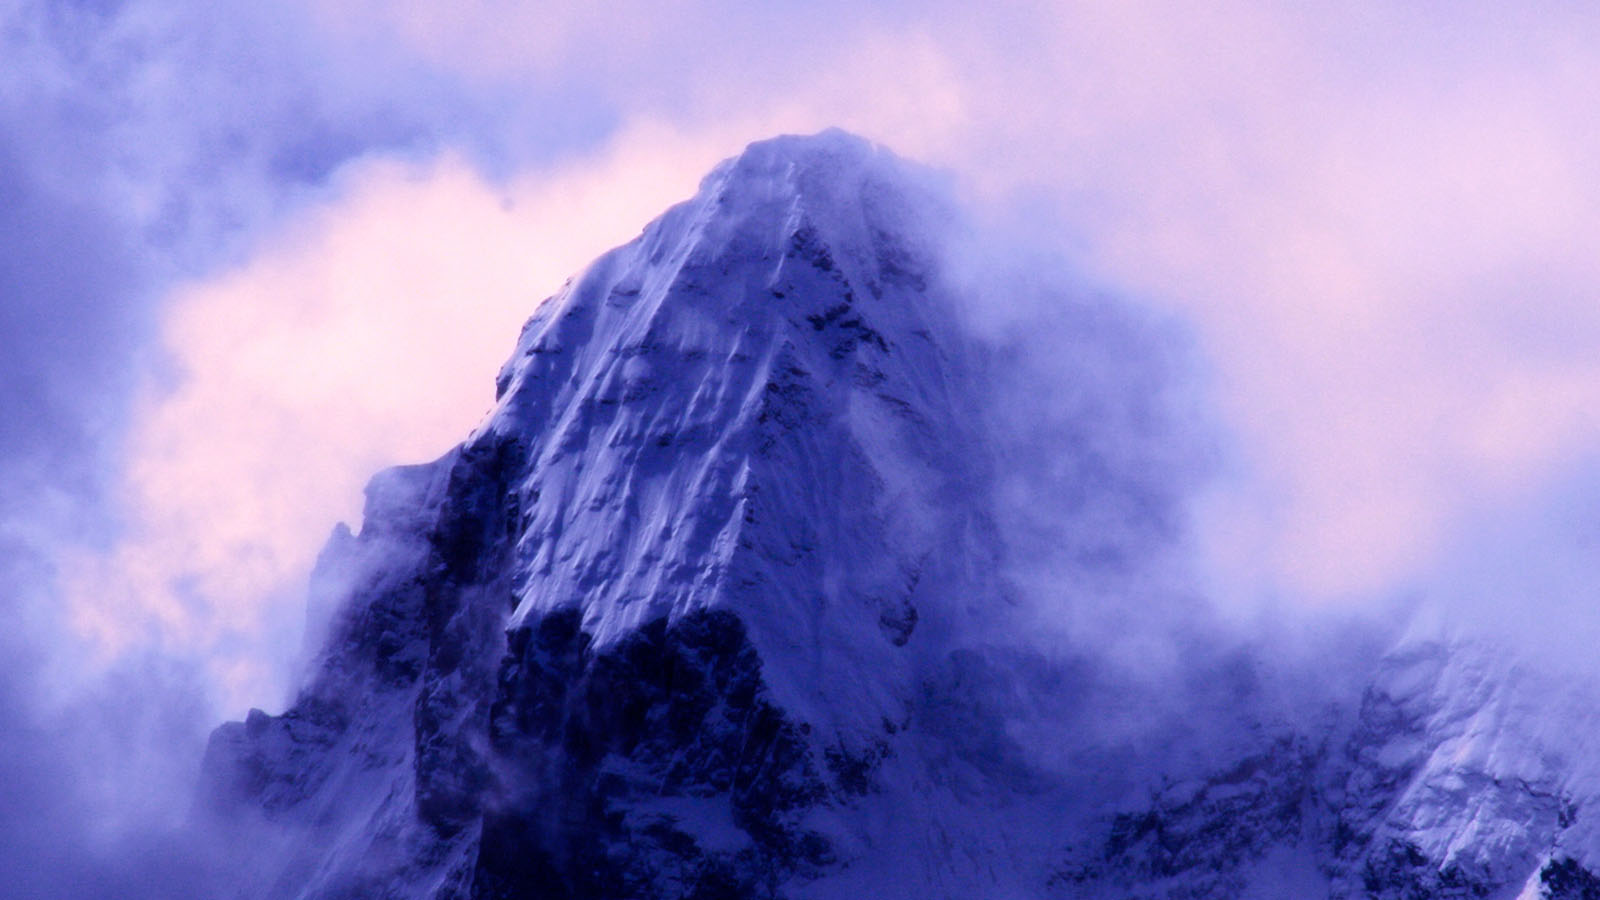 Mountain landscape desktop wallpaper in fog